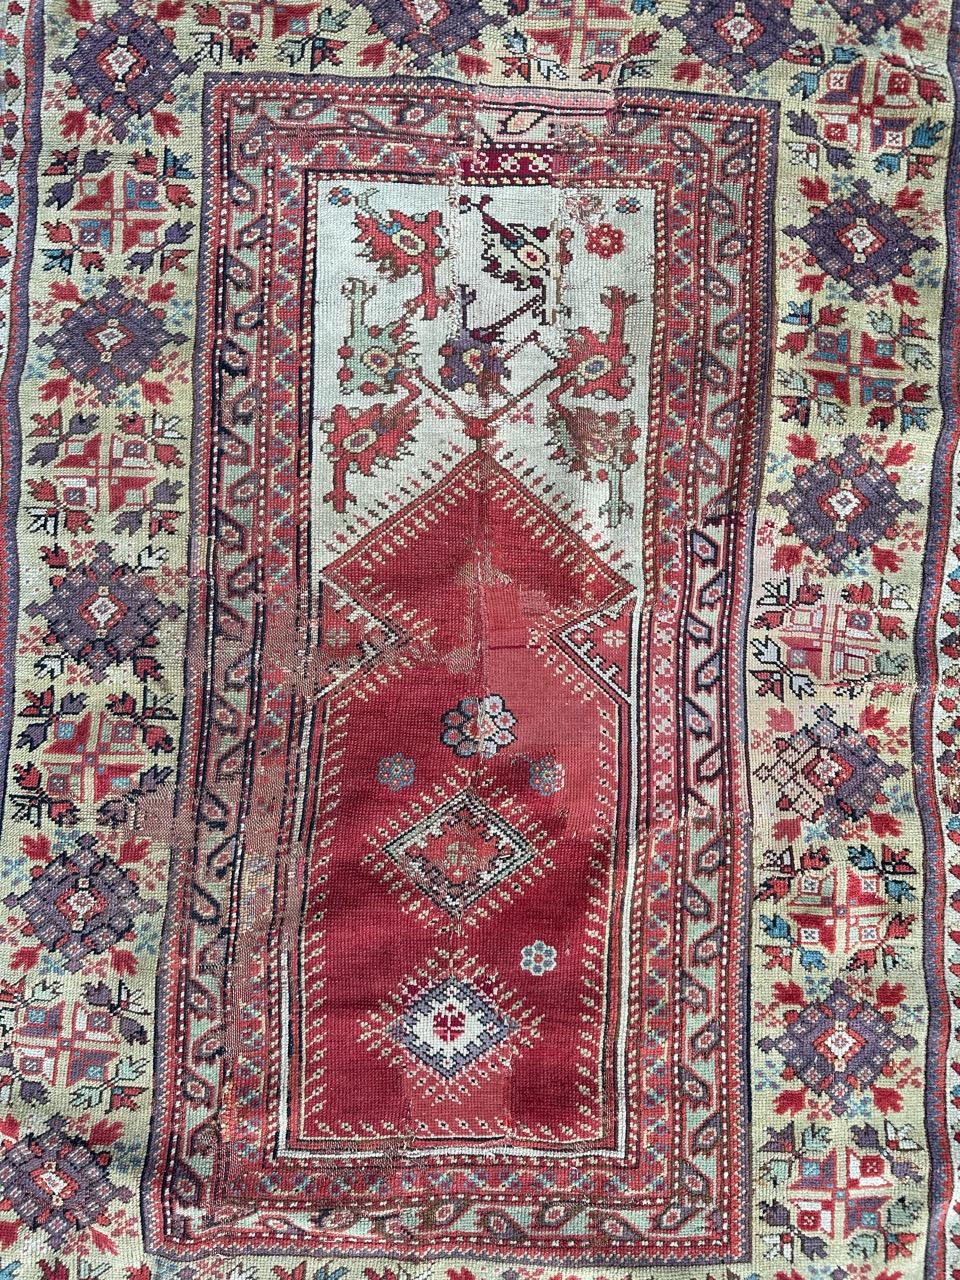 Joli tapis turc ancien de collection, probablement de la première moitié du 19e siècle, avec de belles couleurs.  mihrab design et de belles couleurs naturelles avec un champ rouge, blanc, vert clair, violet et noir. Il y a de vieilles réparations.